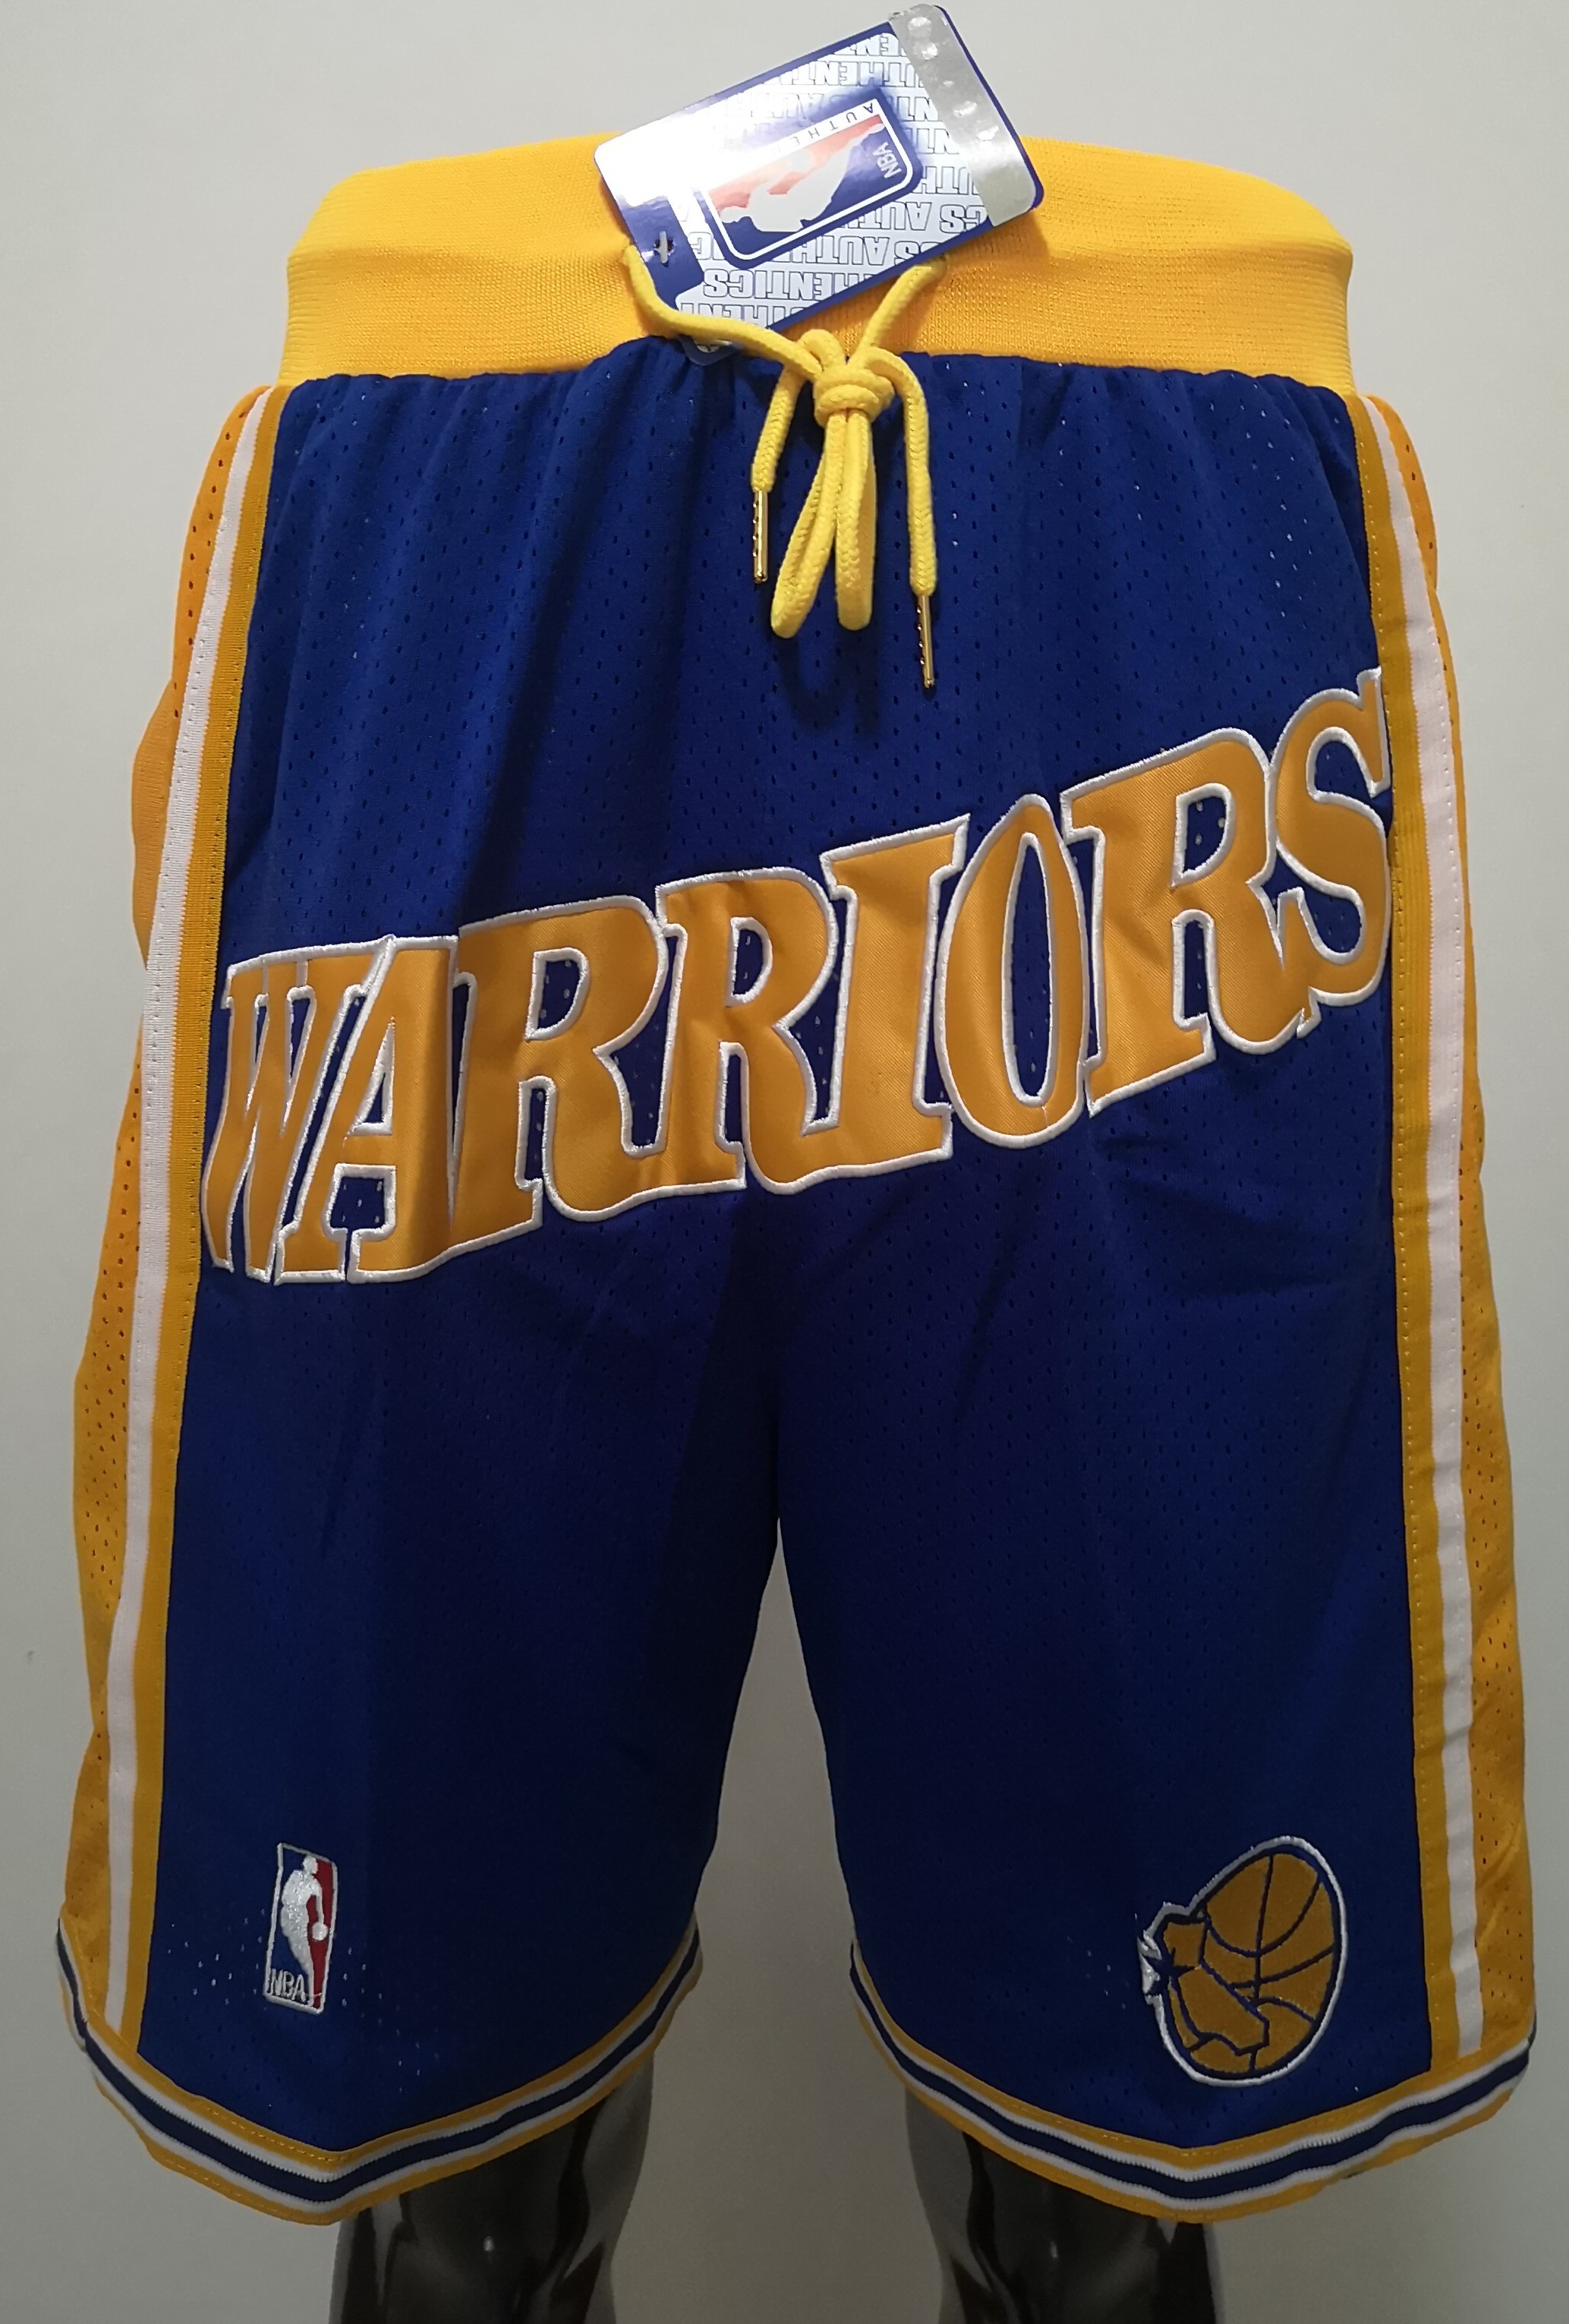 2020 Men NBA Golden State Warriors blue shorts->denver nuggets->NBA Jersey